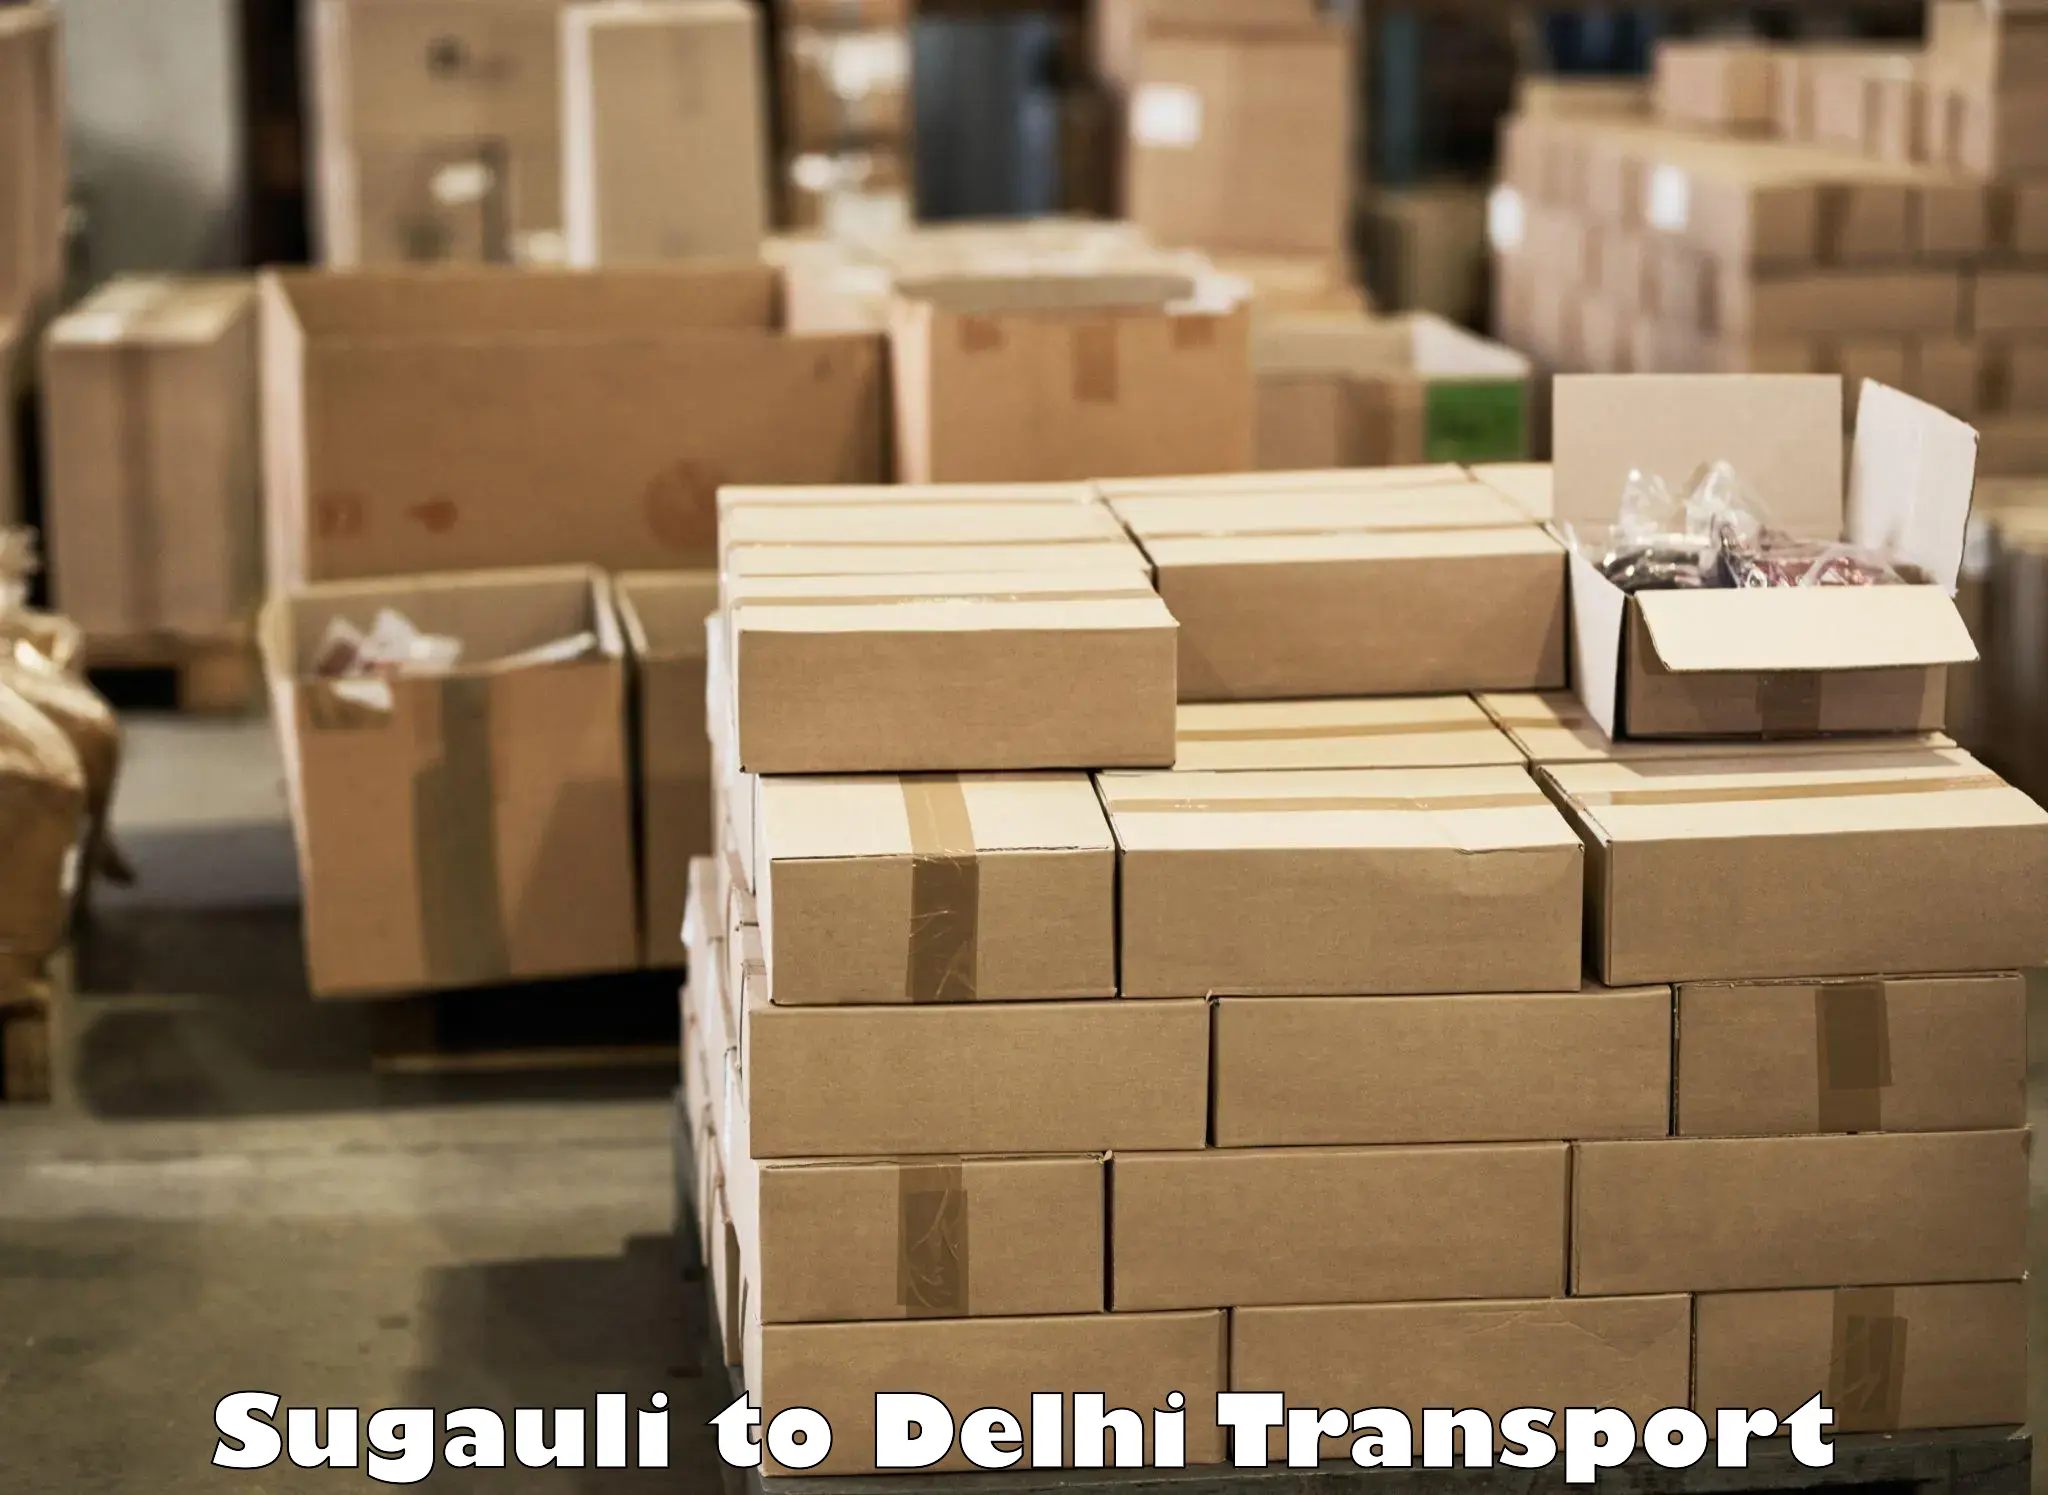 Road transport online services Sugauli to IIT Delhi